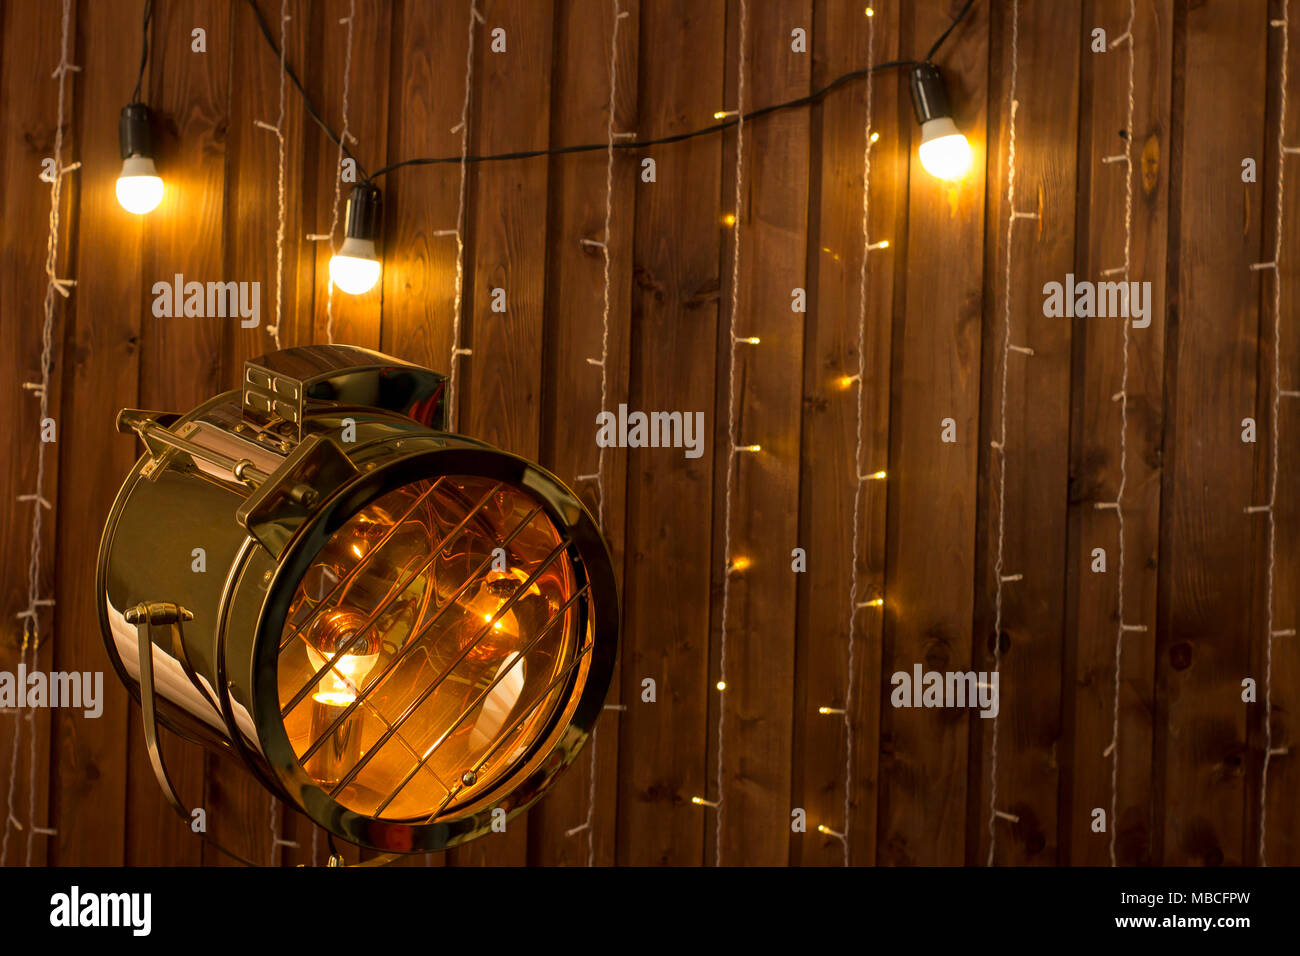 https://c8.alamy.com/compde/mbcfpw/loft-innen-orange-holzwand-und-vintage-licht-scheinwerfer-lampe-retro-hintergrund-mock-up-mbcfpw.jpg